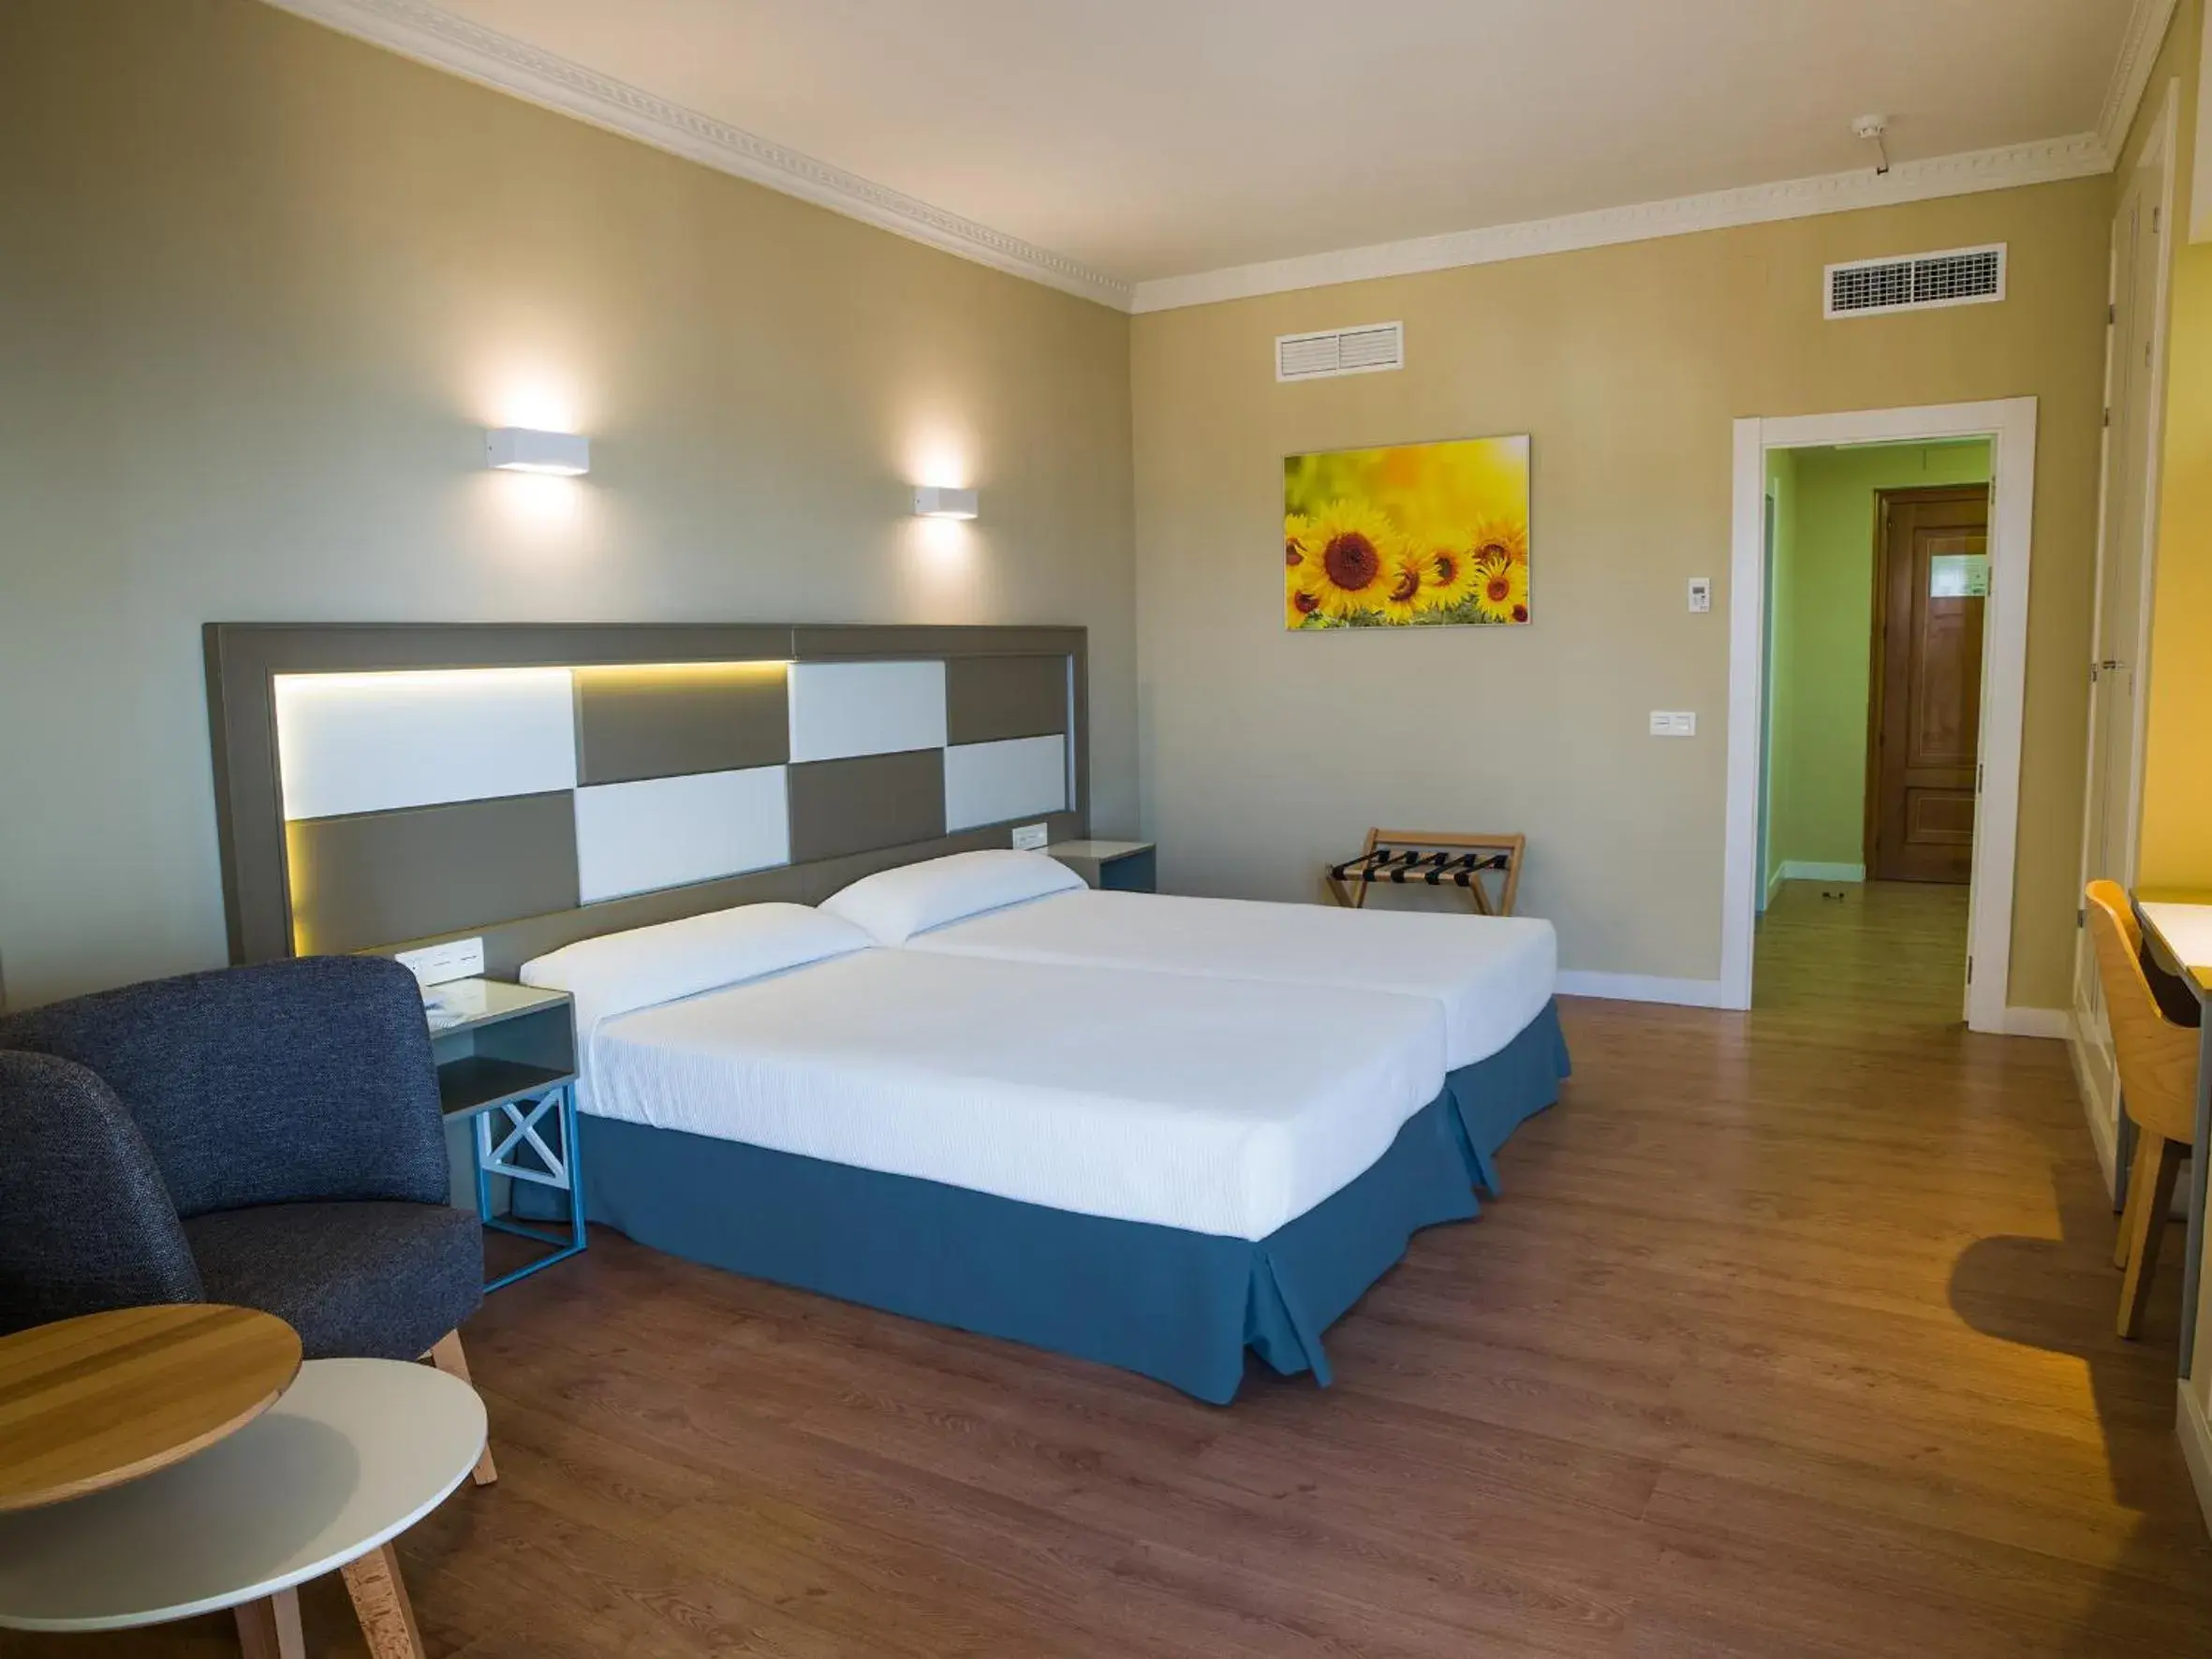 Bedroom in Hotel Monarque Torreblanca